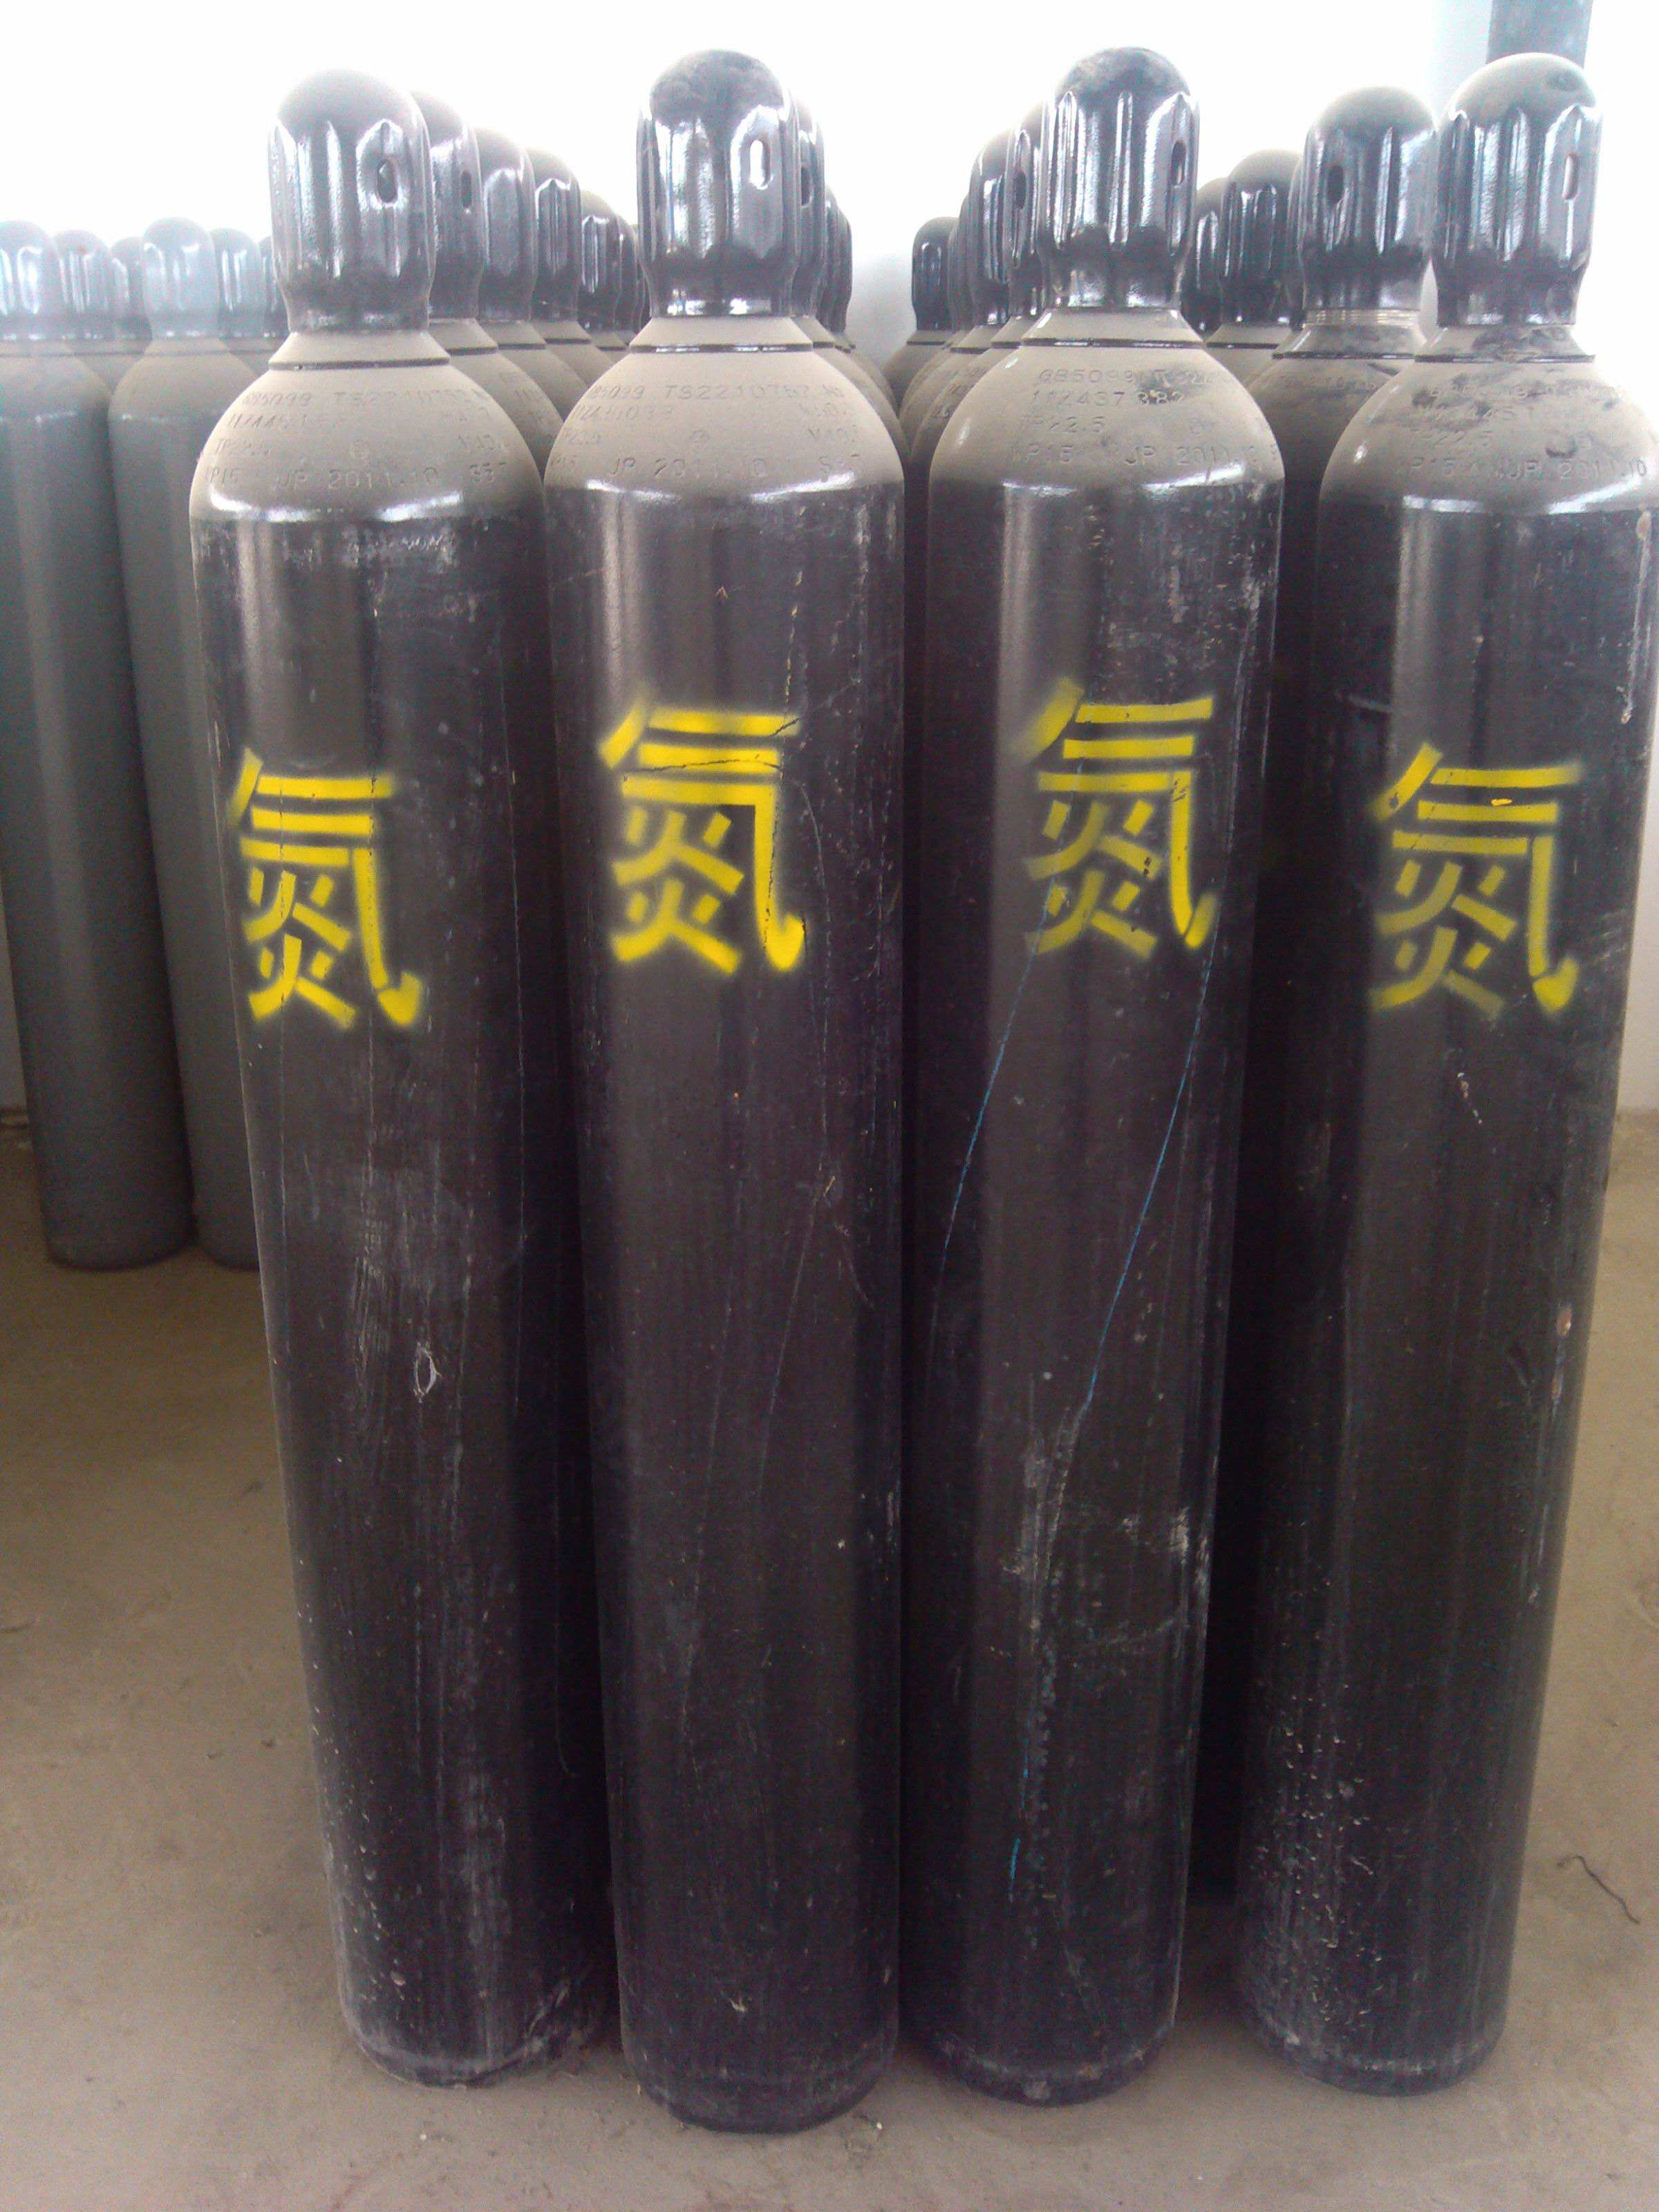 天津工业用高纯氮气 瓶装氮气 全市配送上门 利信工业气体